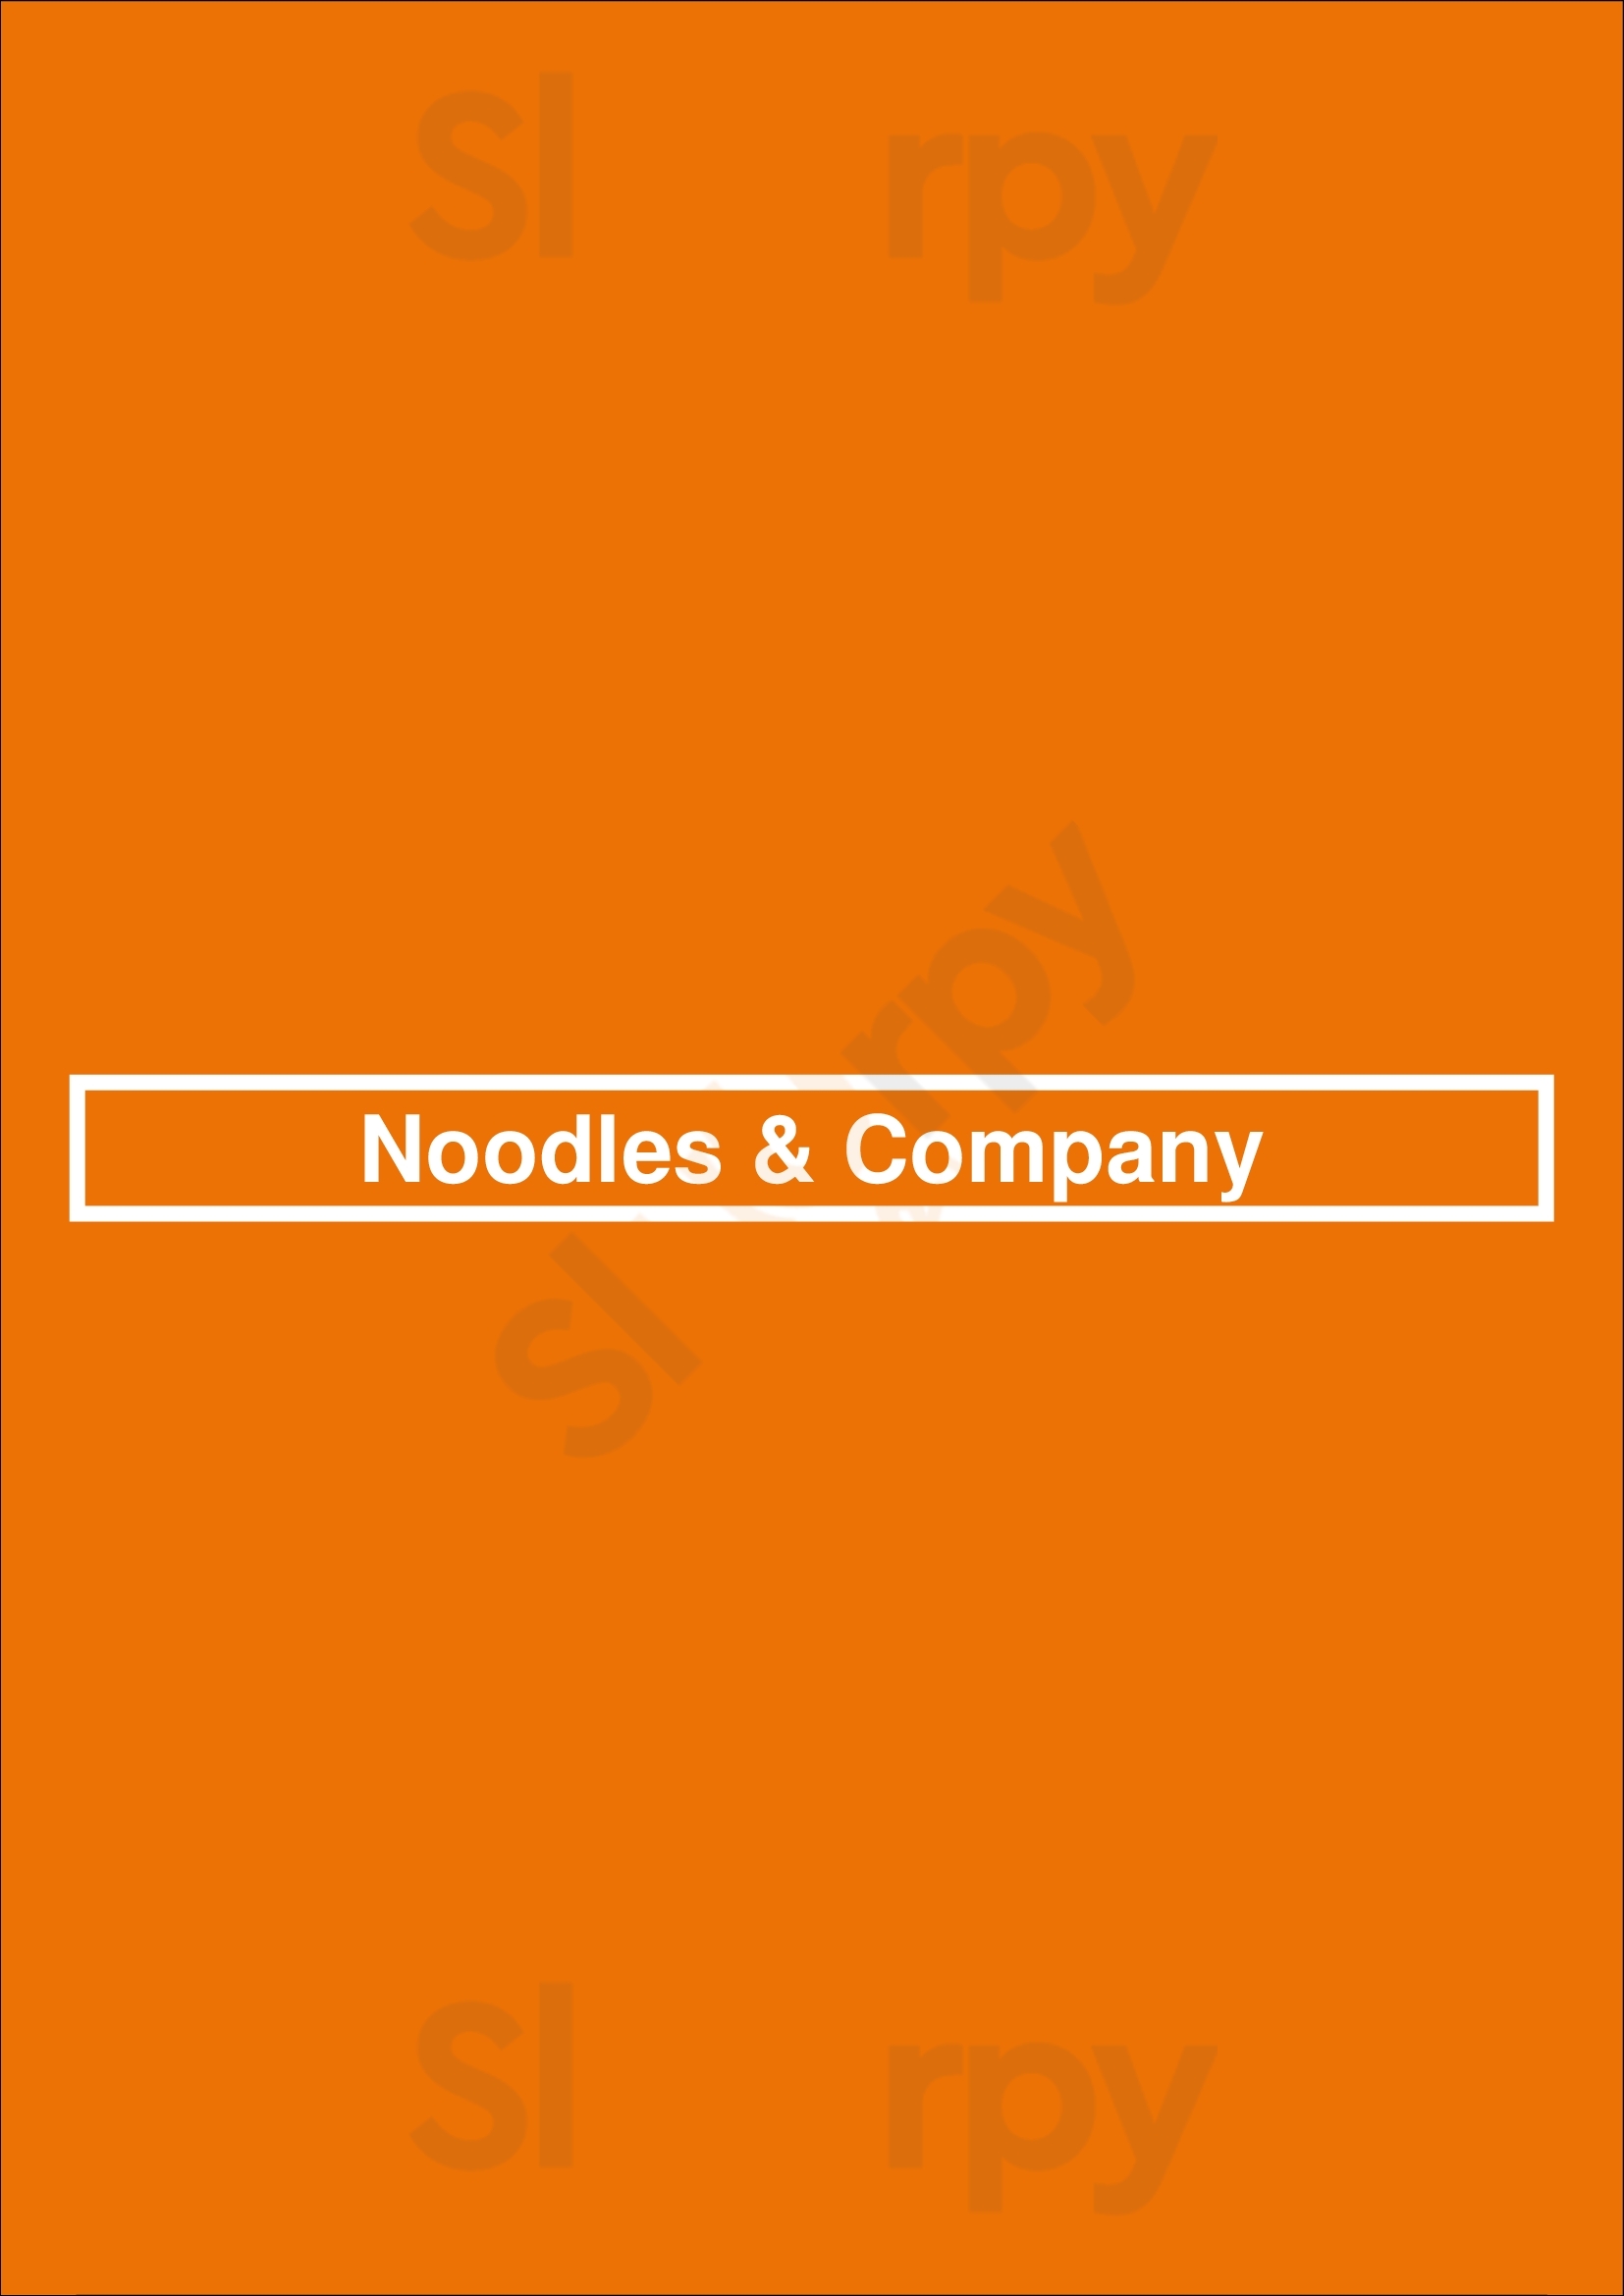 Noodles & Company La Jolla Menu - 1